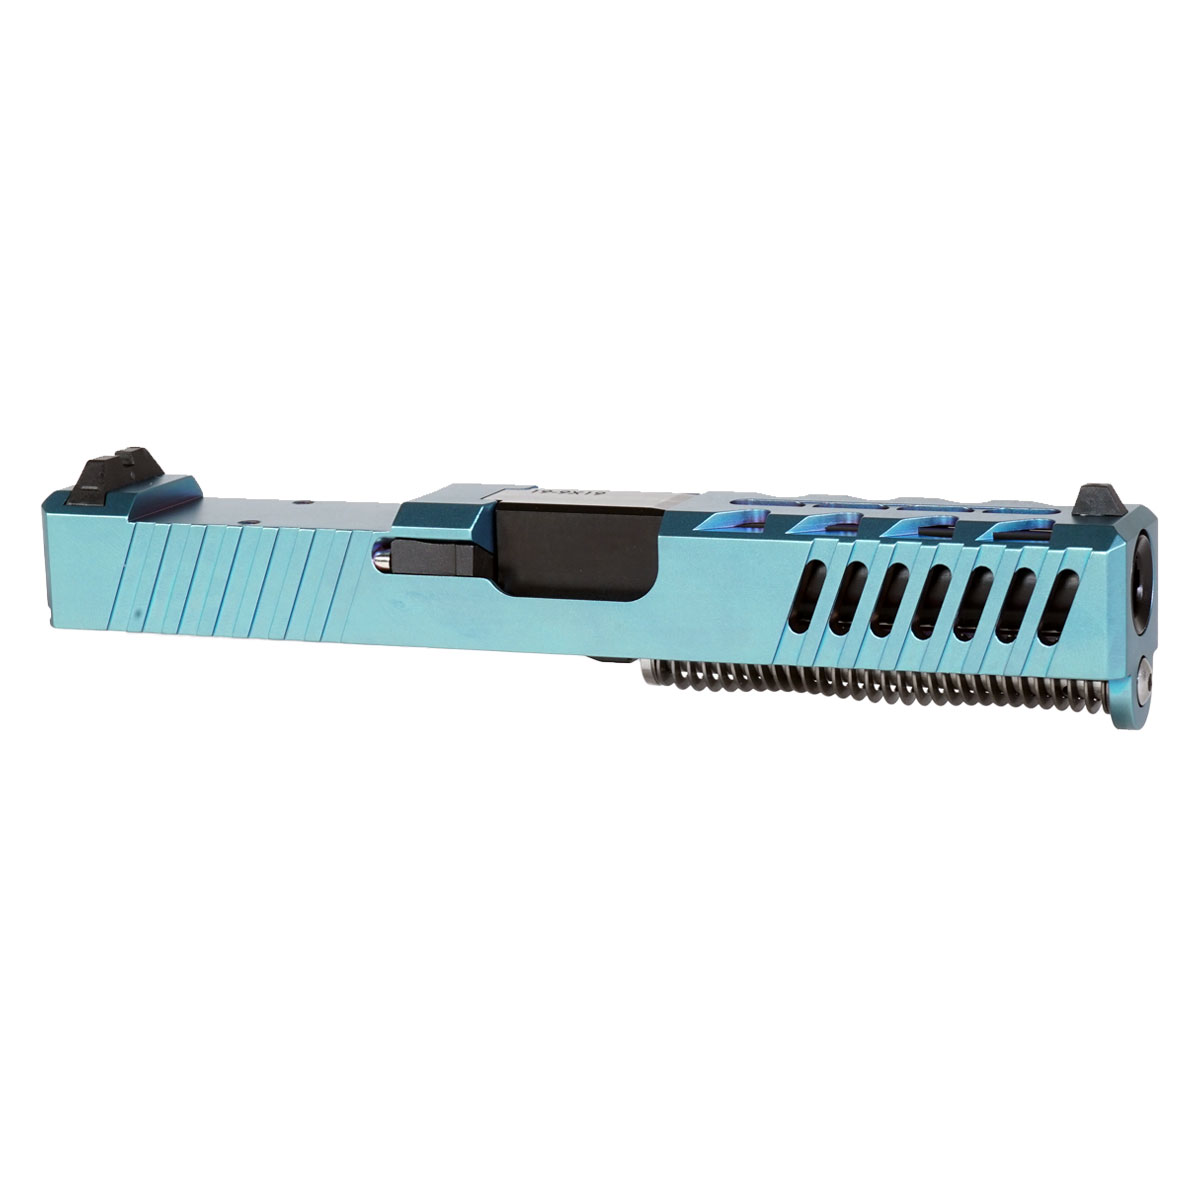 DDS 'Ripplemaker' 9mm Complete Slide Kit - Glock 19 Gen 1-3 Compatible